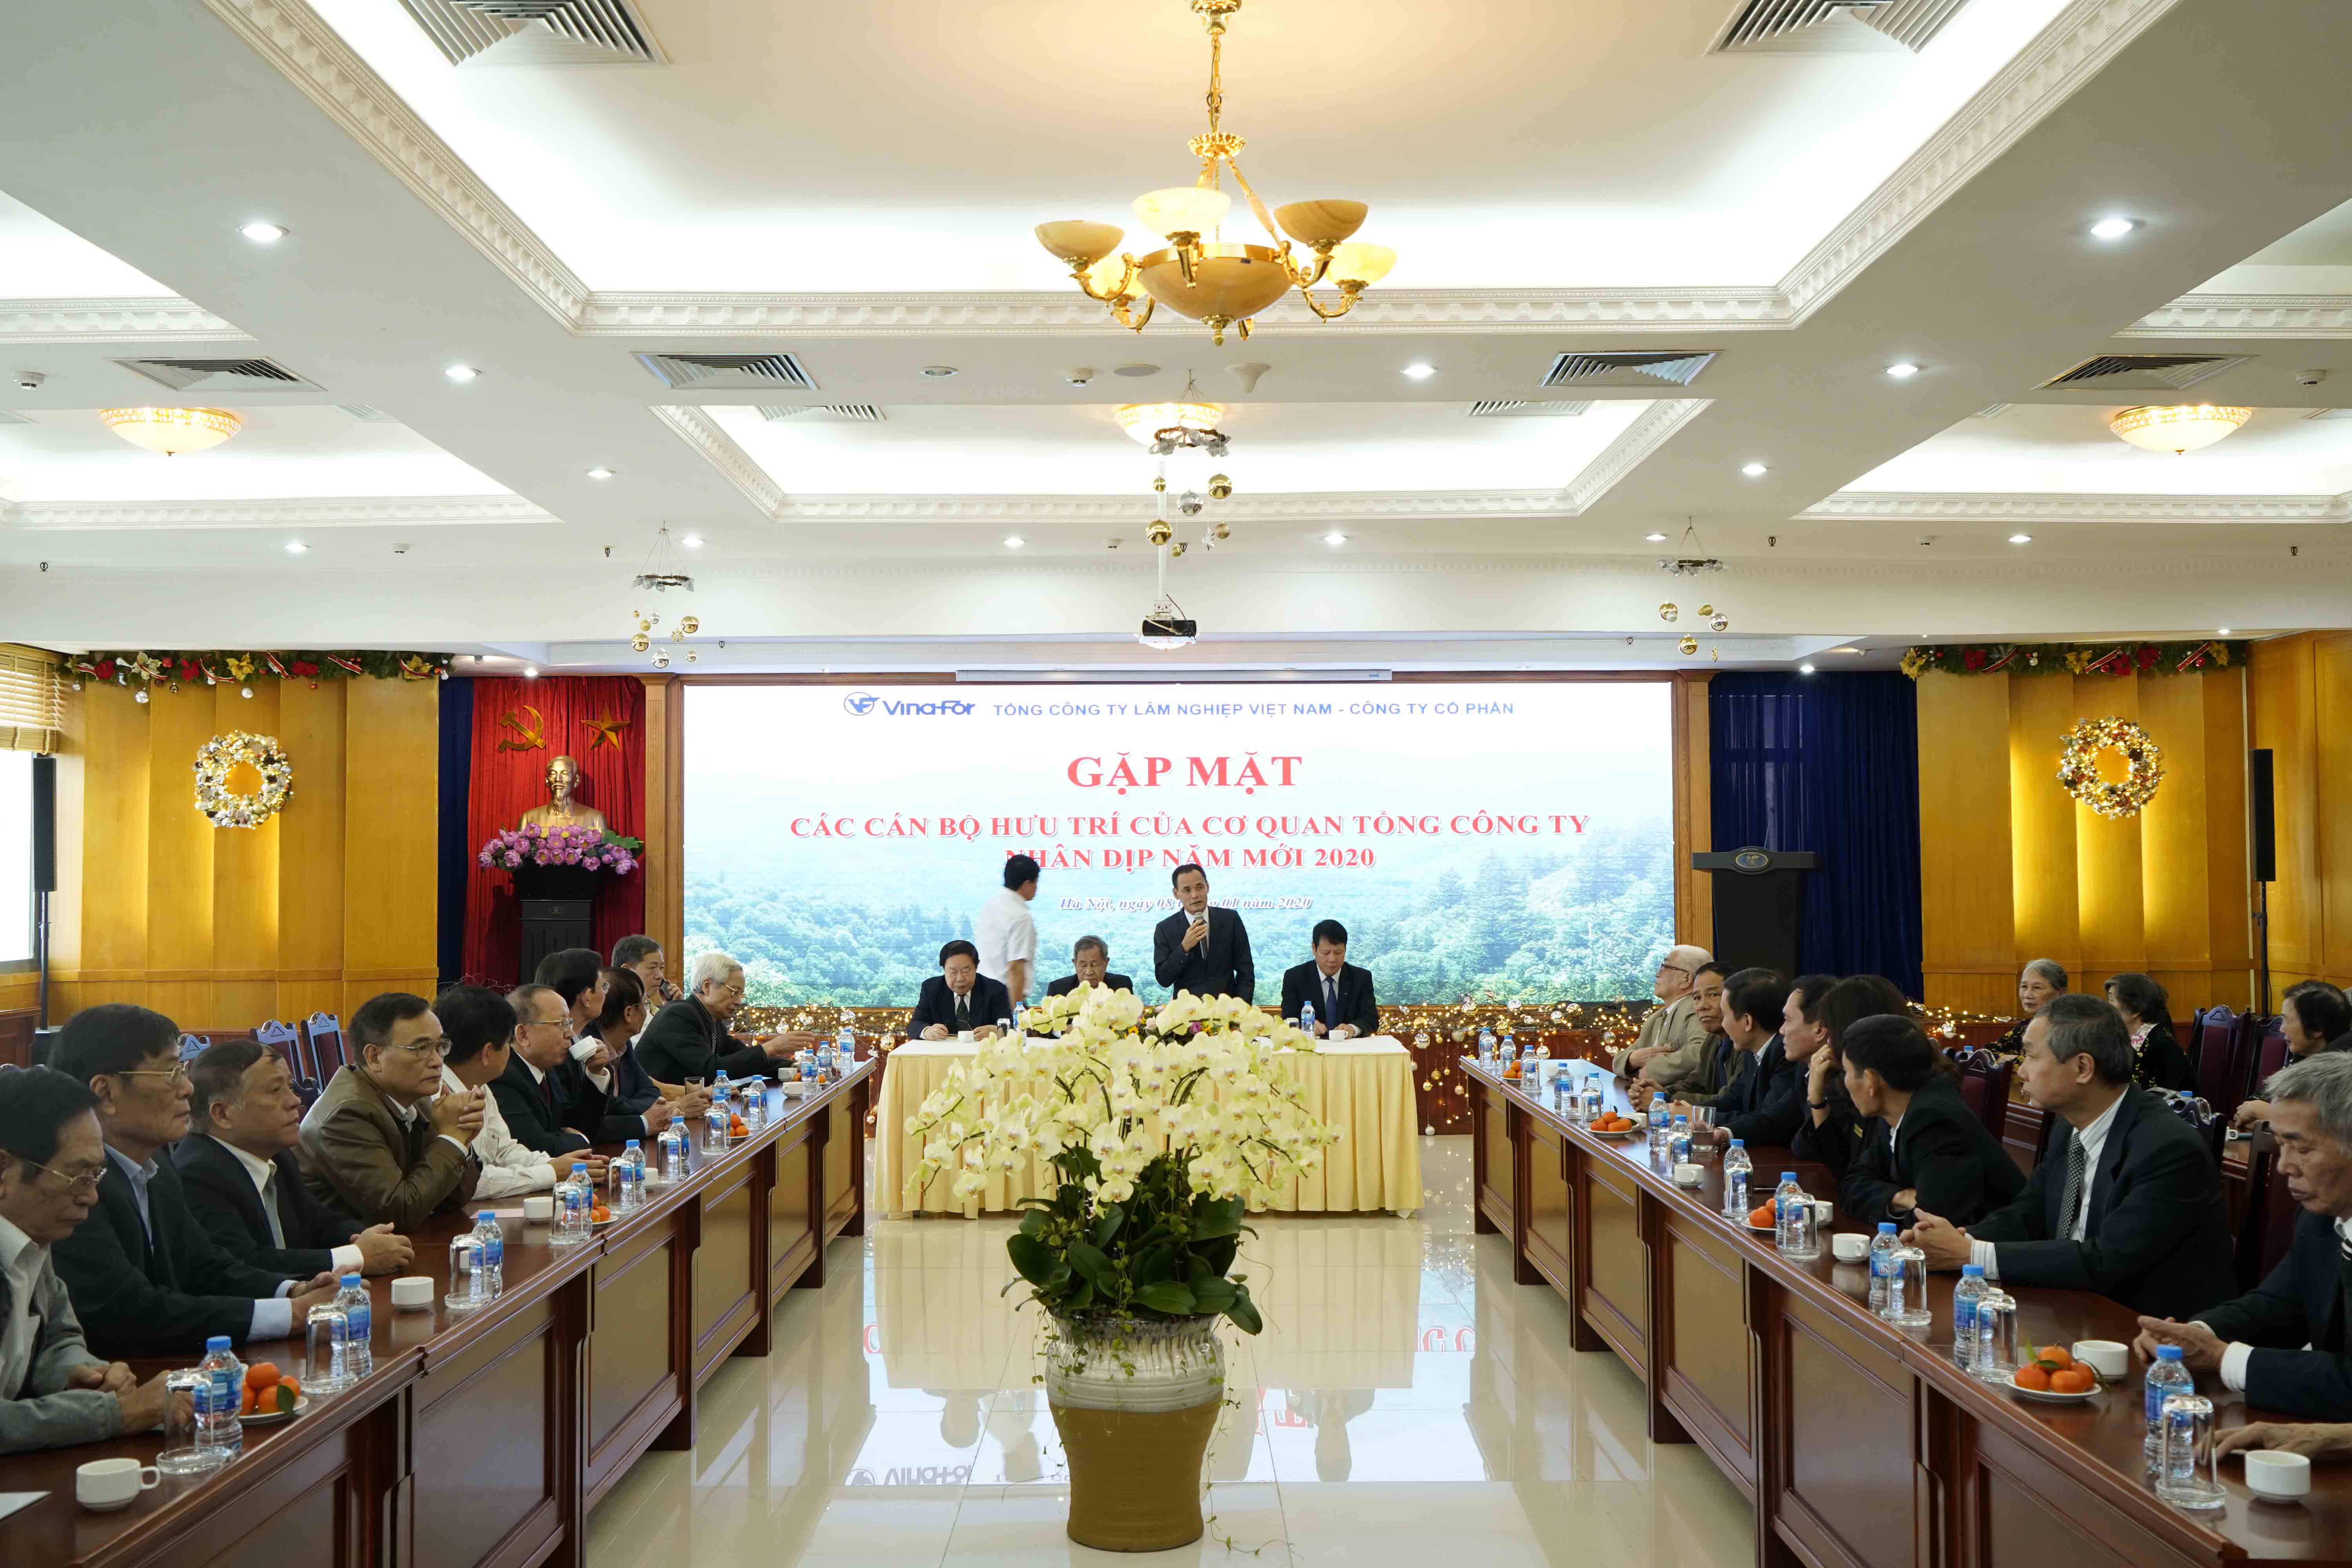 Gặp mặt, tri ân các cán bộ hưu trí của Tổng công ty Lâm nghiệp Việt Nam nhân dịp Xuân Canh tý 2020